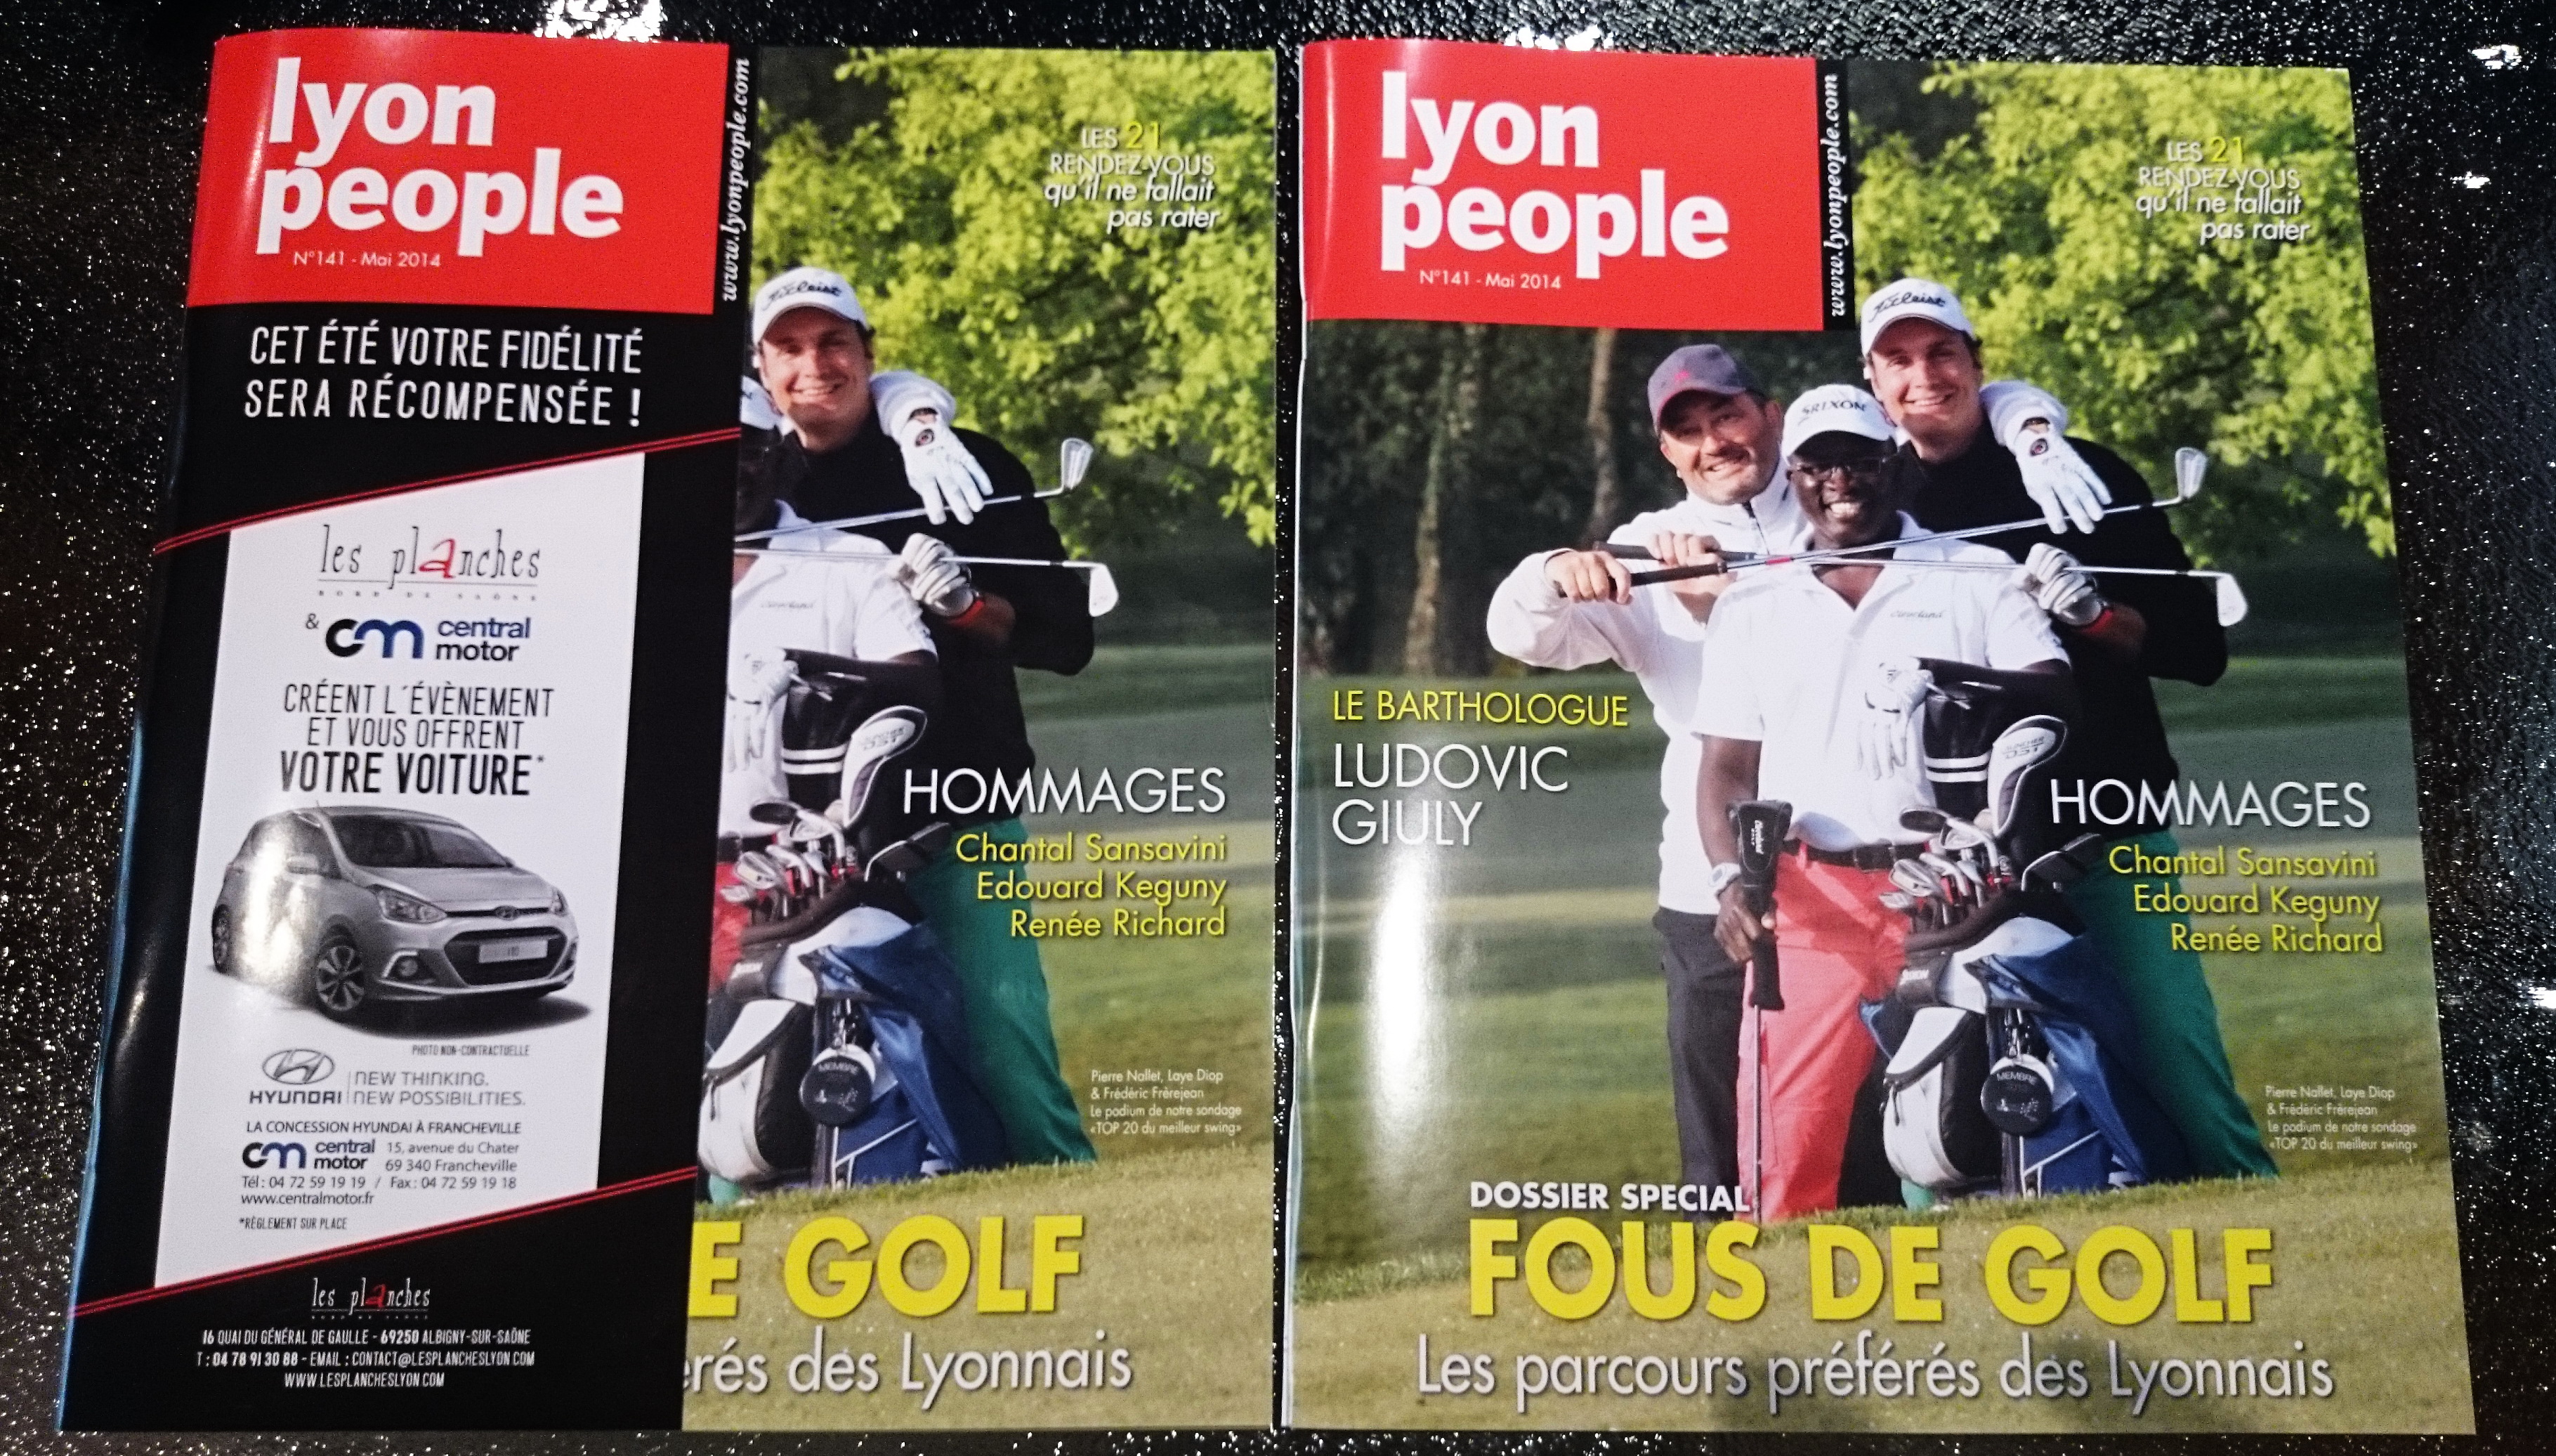 Lyon People Mai 2014. Un Spécial Golf déjà dans les bacs